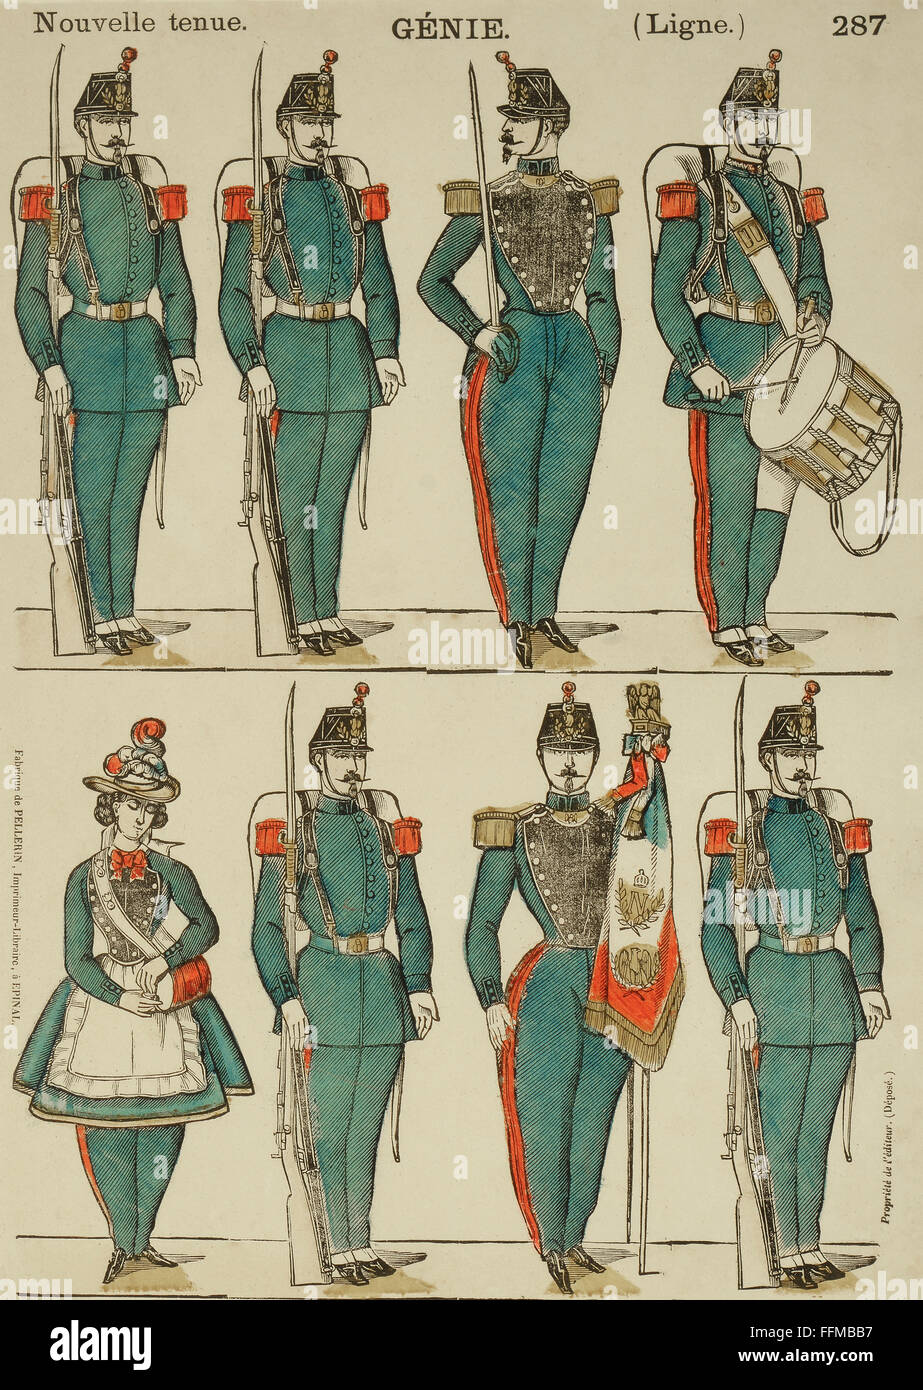 Militär, Frankreich, Kampfingenieure, Farbholzschnitt, 38 x 27 cm, Druck: Pelerin, Epinal, um 1840, Zusatz-Rechteklärung-nicht lieferbar Stockfoto